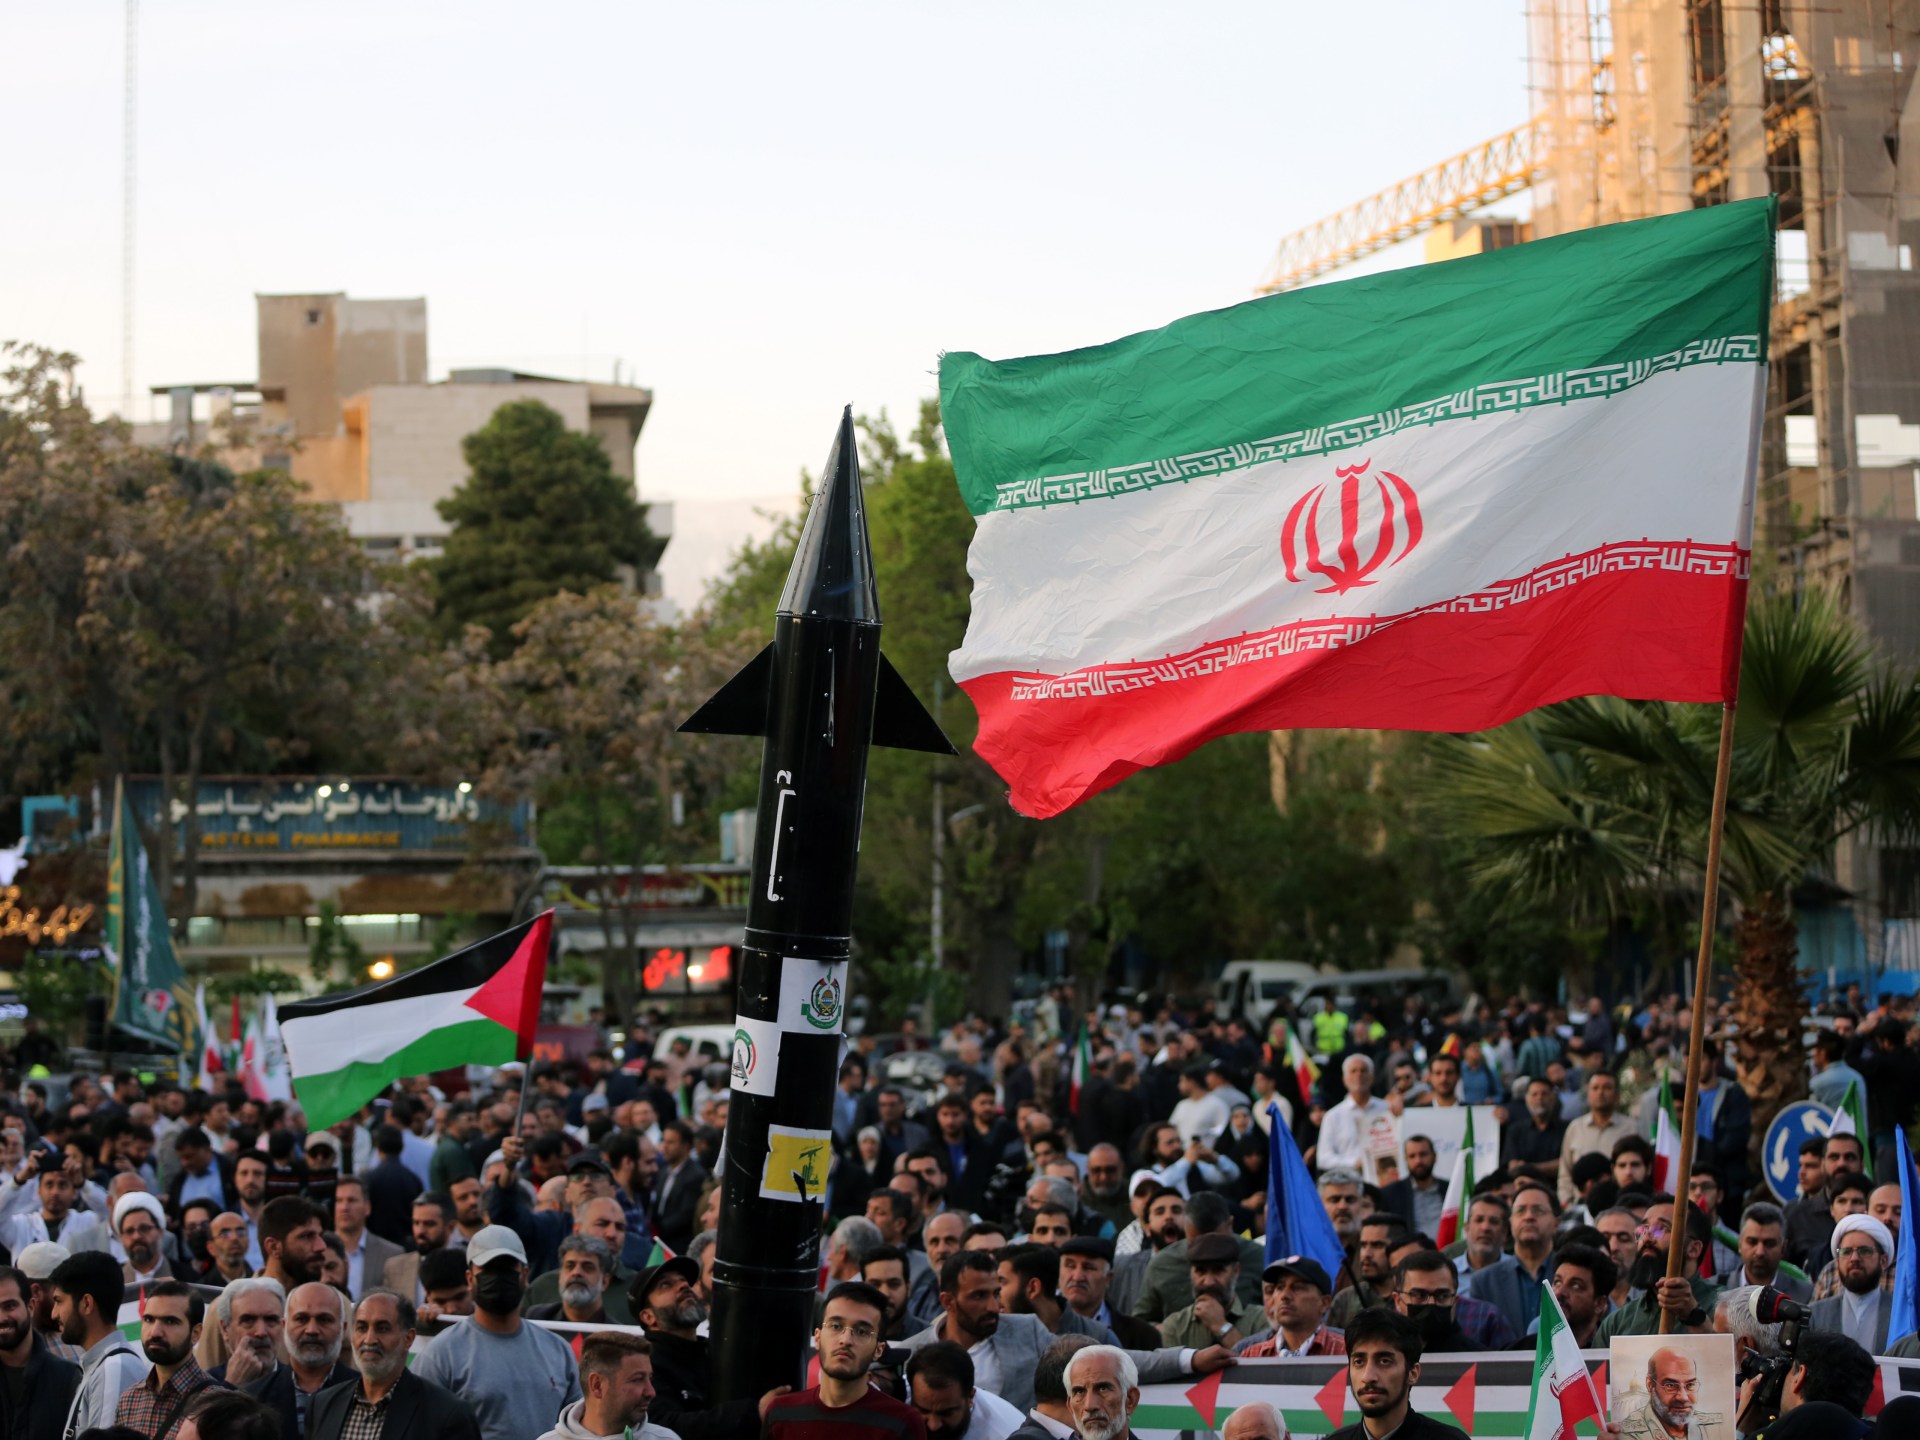 كسر المعادلة بين طهران وتل أبيب وفرضية الحرب الإقليمية | سياسة – البوكس نيوز